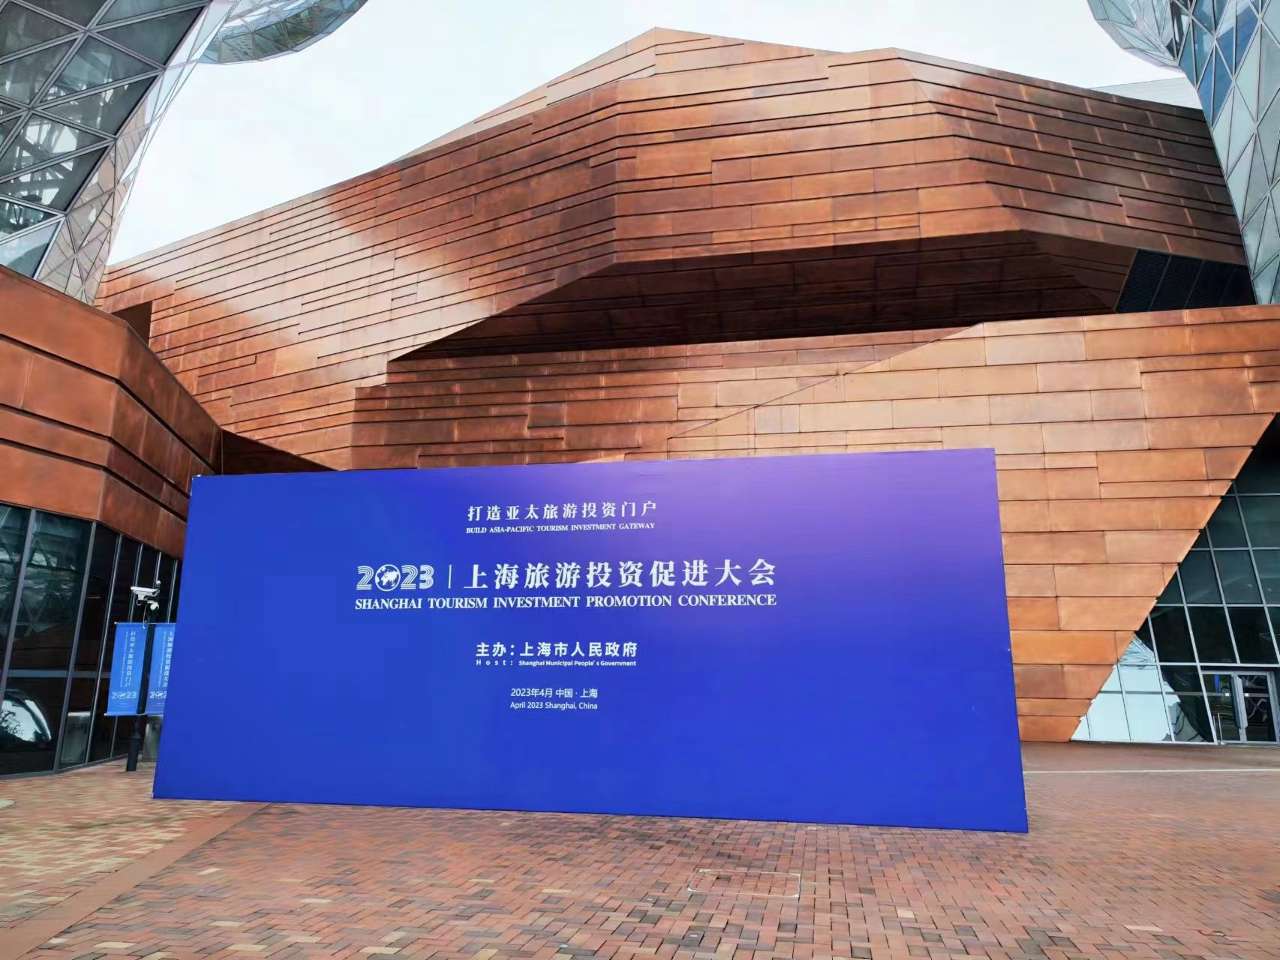 第二届旅游投资促进大会在沪召开 上海积极打造亚太旅游投资门户